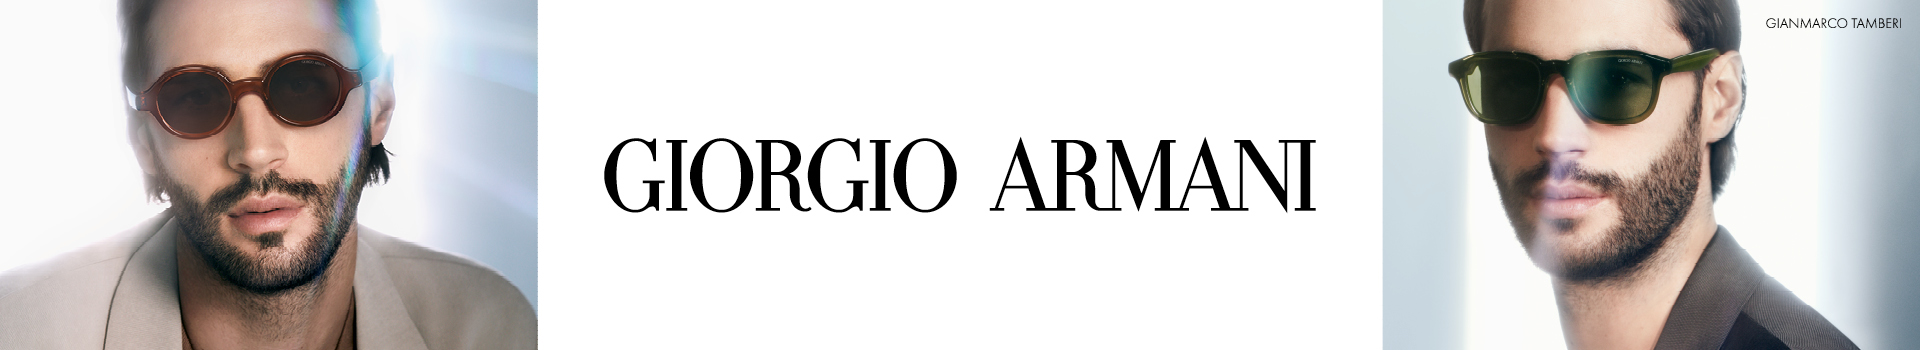 Giorgio Armani en GMO